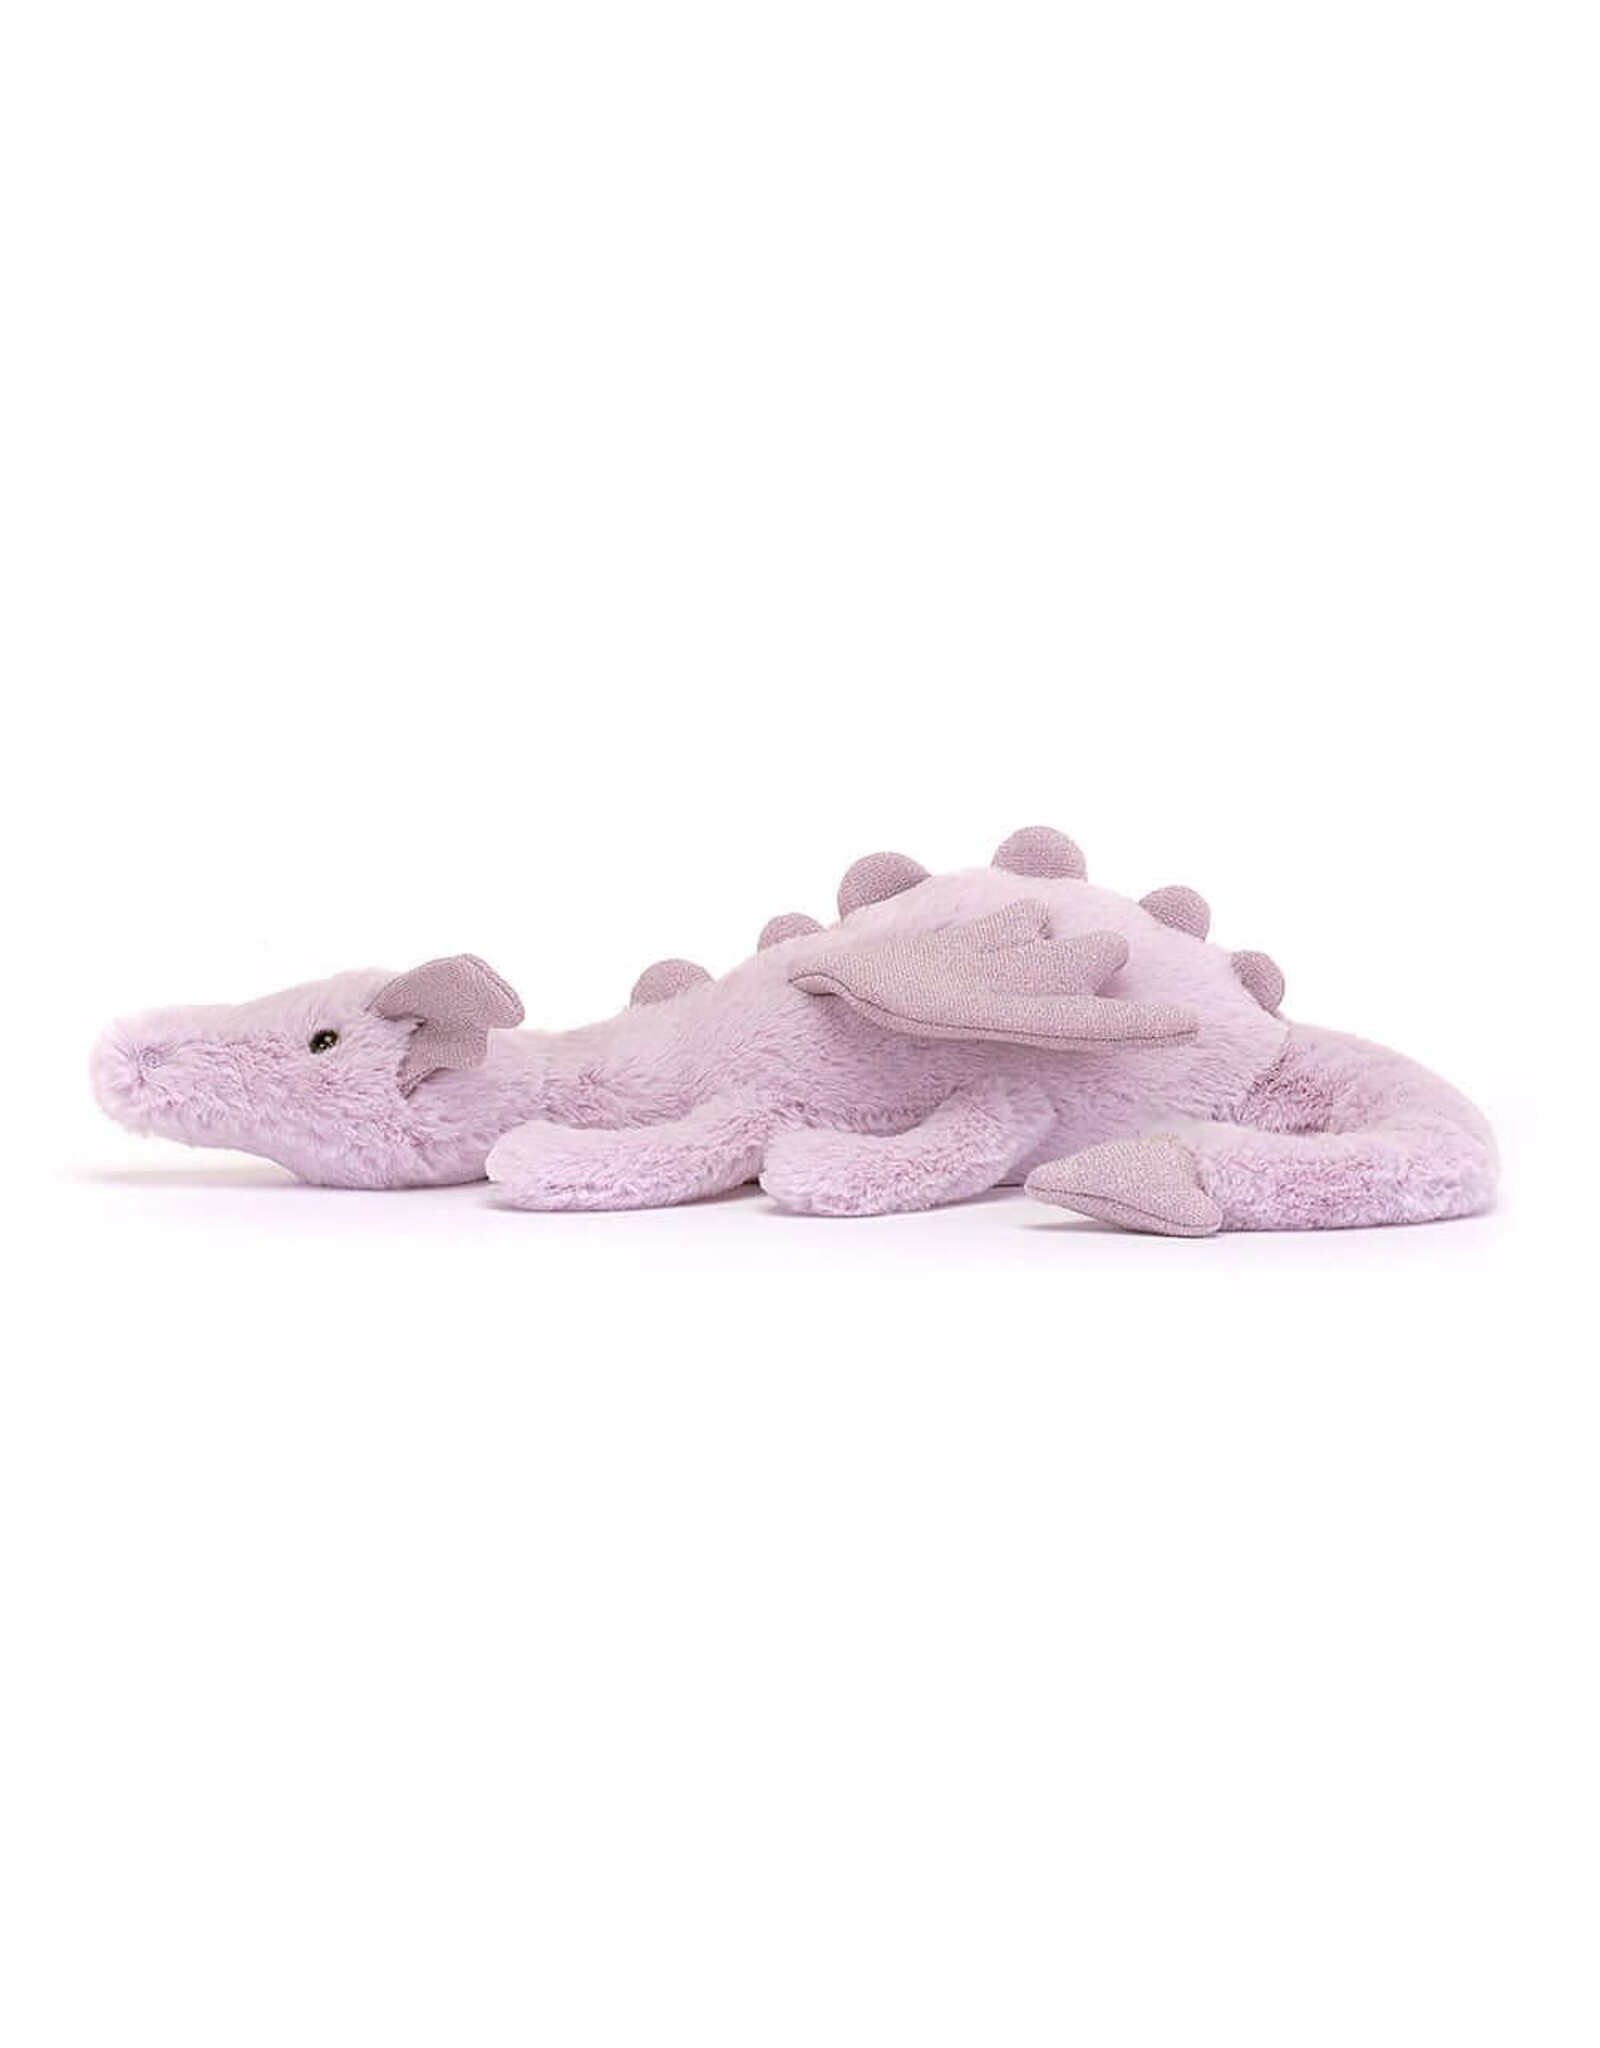 Jellycat Knuffel - Lavender Dragon Little